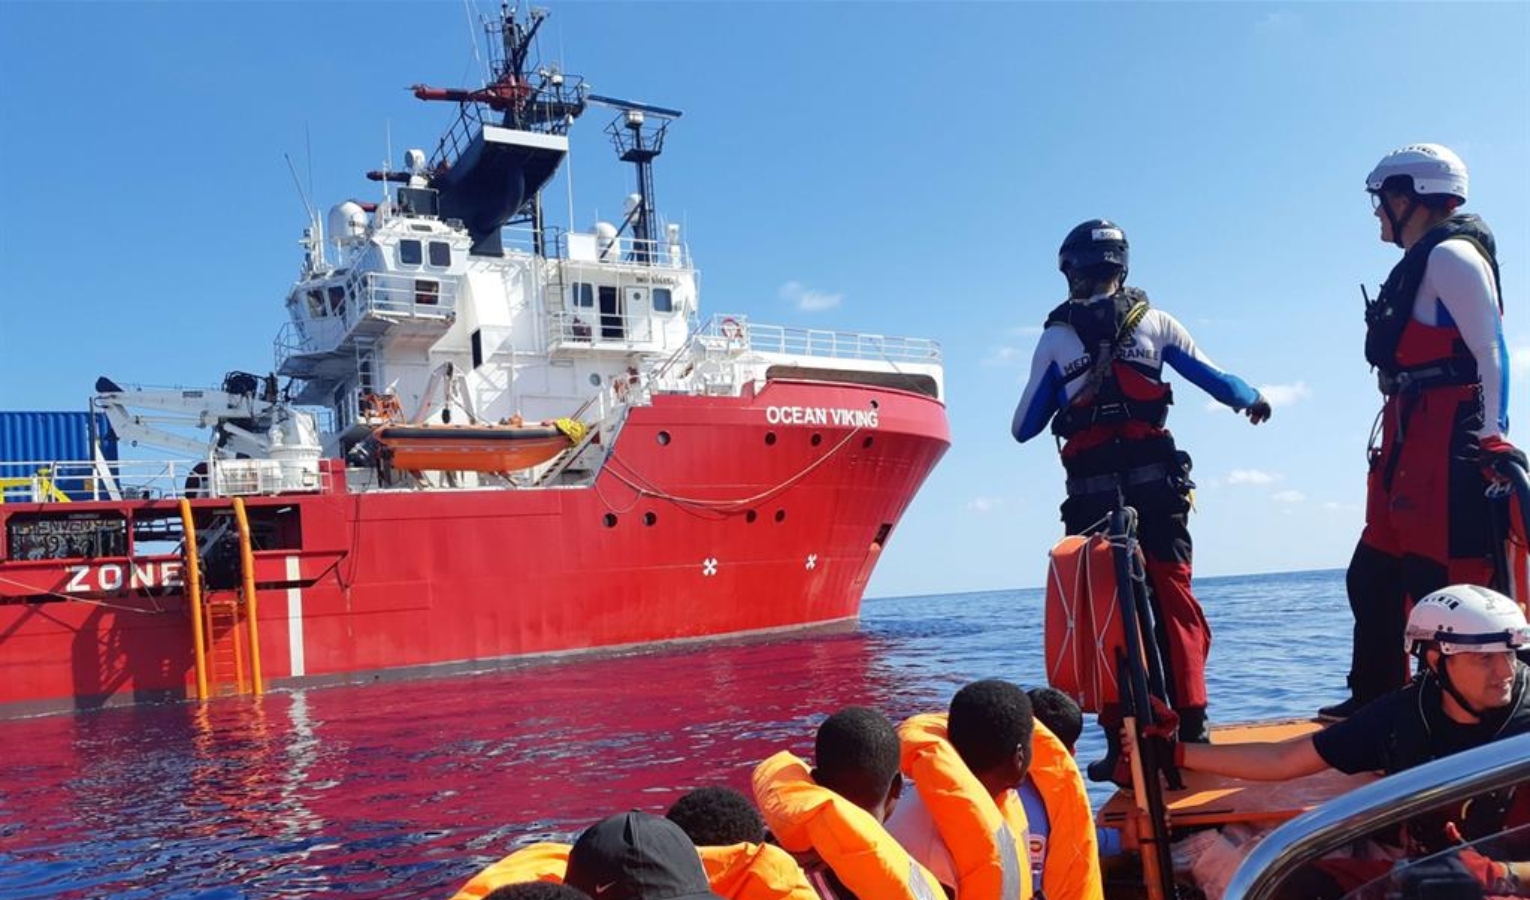 In arrivo a Genova la nave Ocean Viking, a bordo 272 migranti: oggi vertice in prefettura